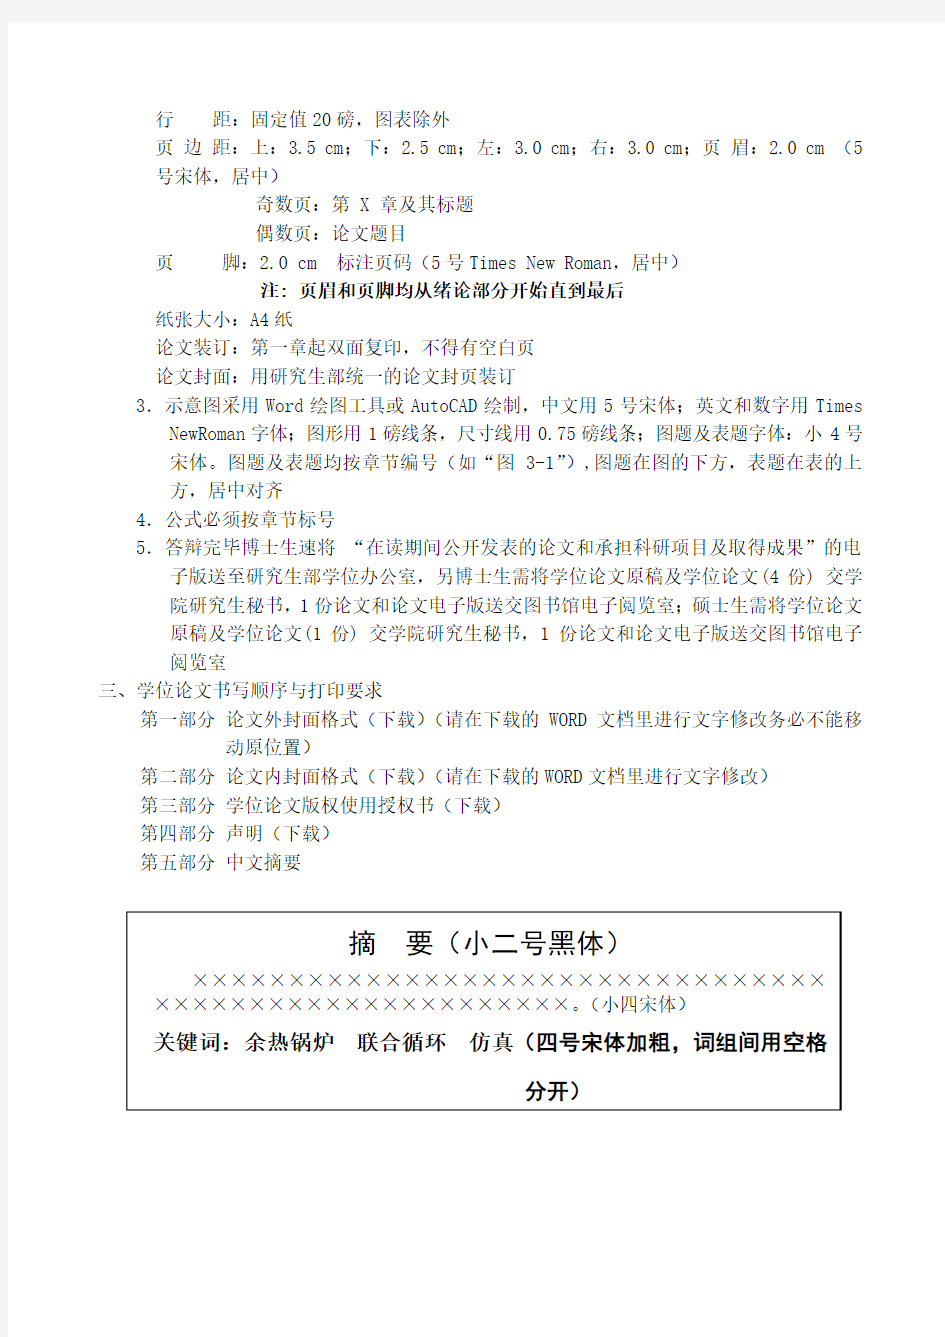 上海理工大学博士、硕士学位论文格式要求2013-12-06